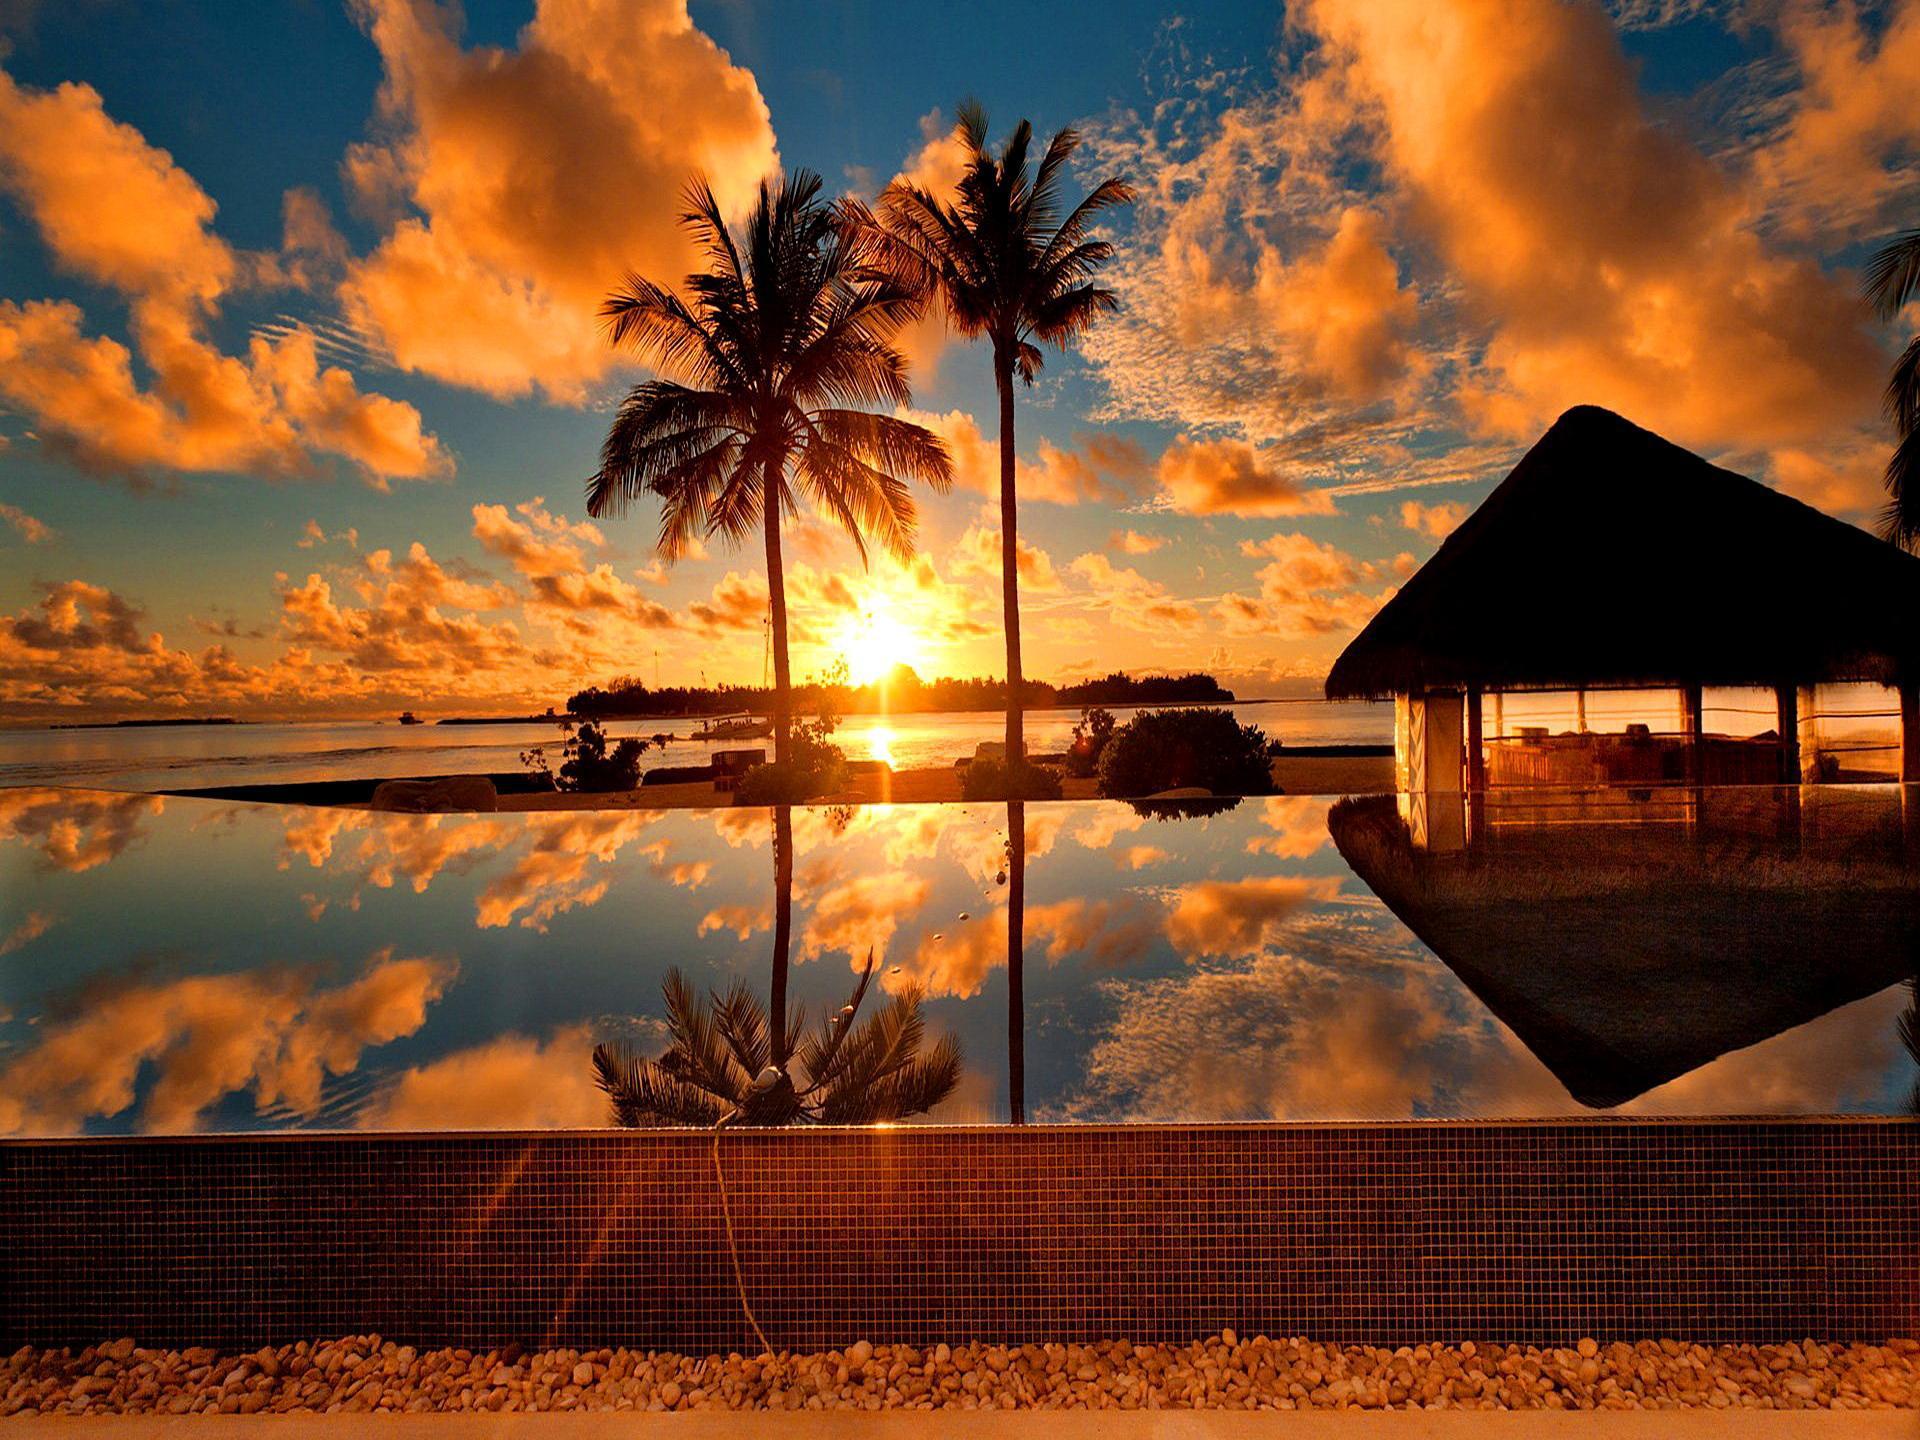 Tropical Sunrise Wallpapers - Top Những Hình Ảnh Đẹp